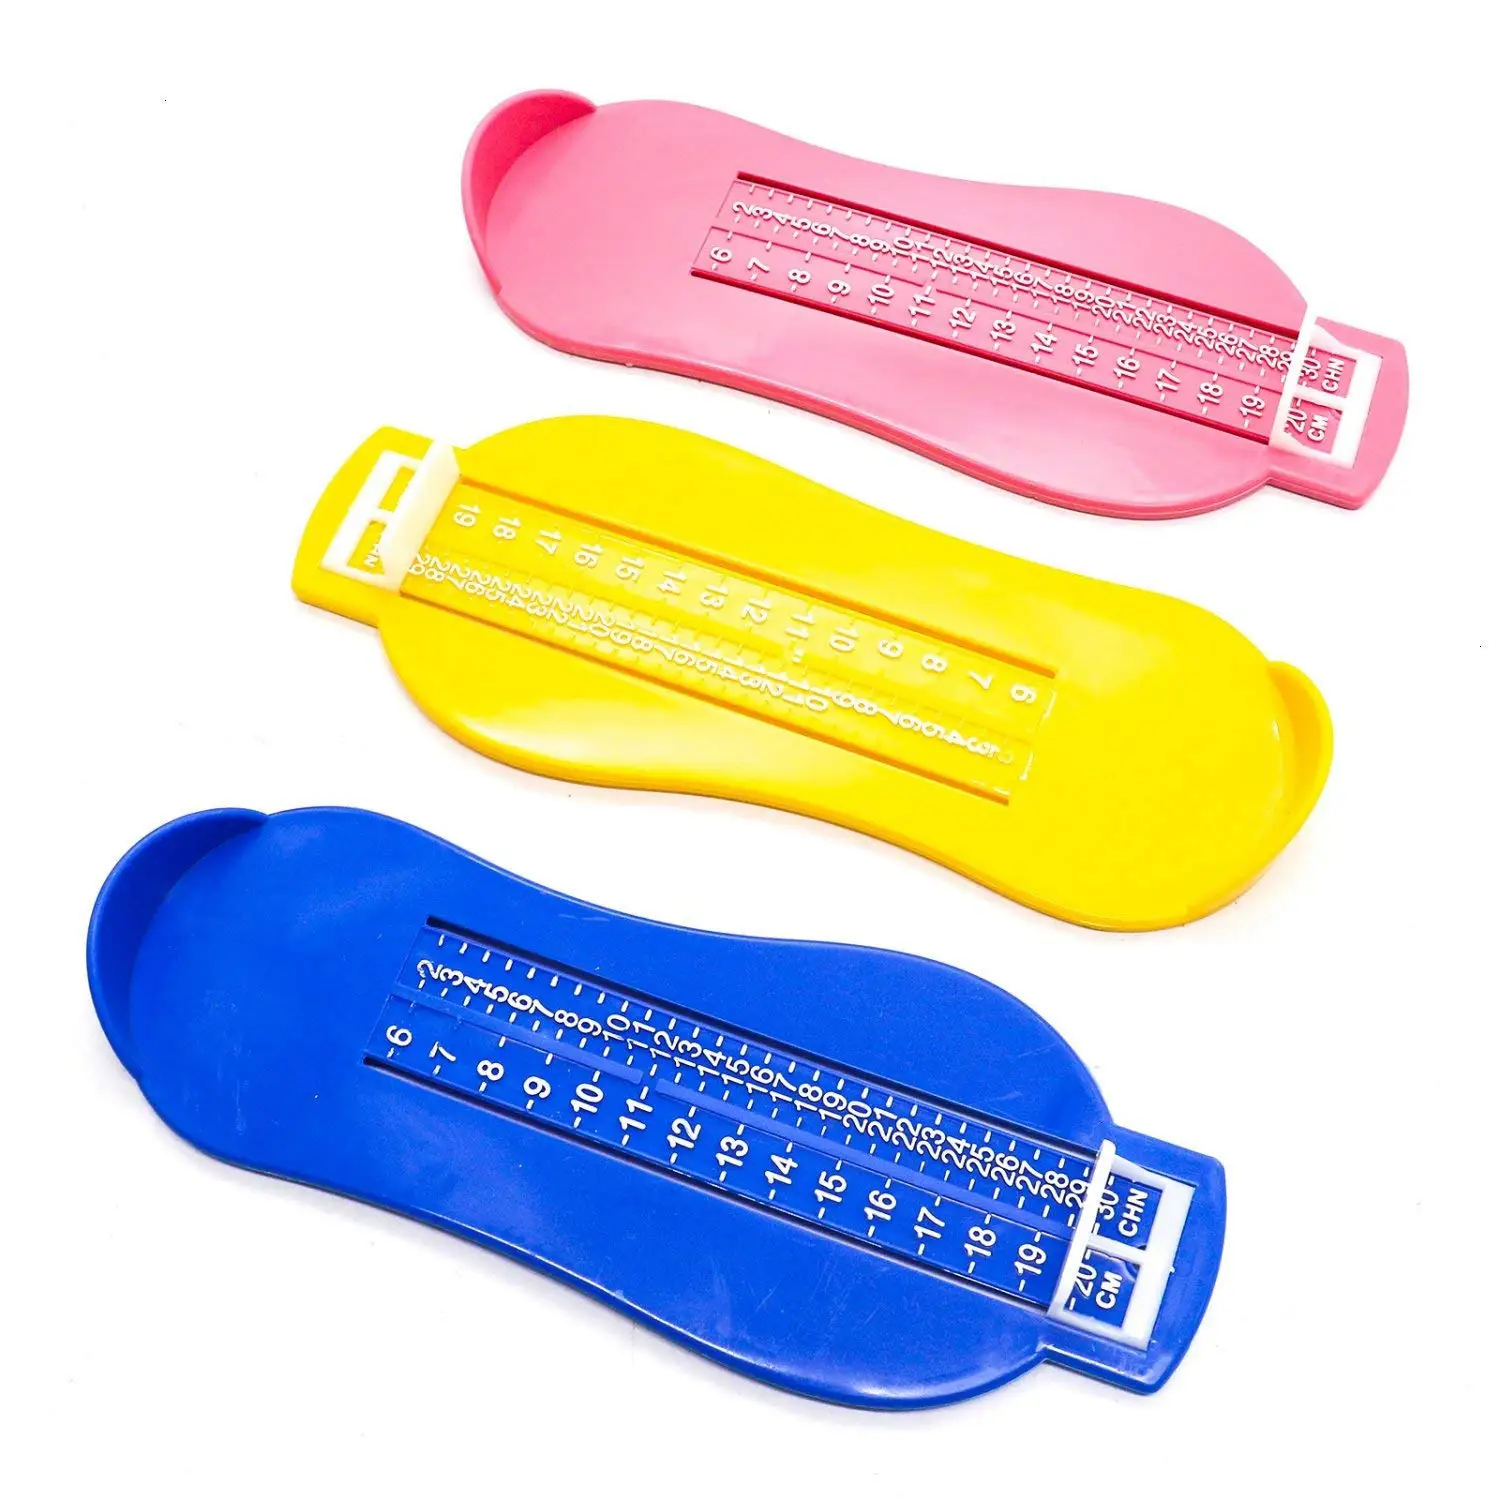 3 шт. Детские измерительные приборы для ног детский измеритель расстояния инструмент, розовый, синий, желтый